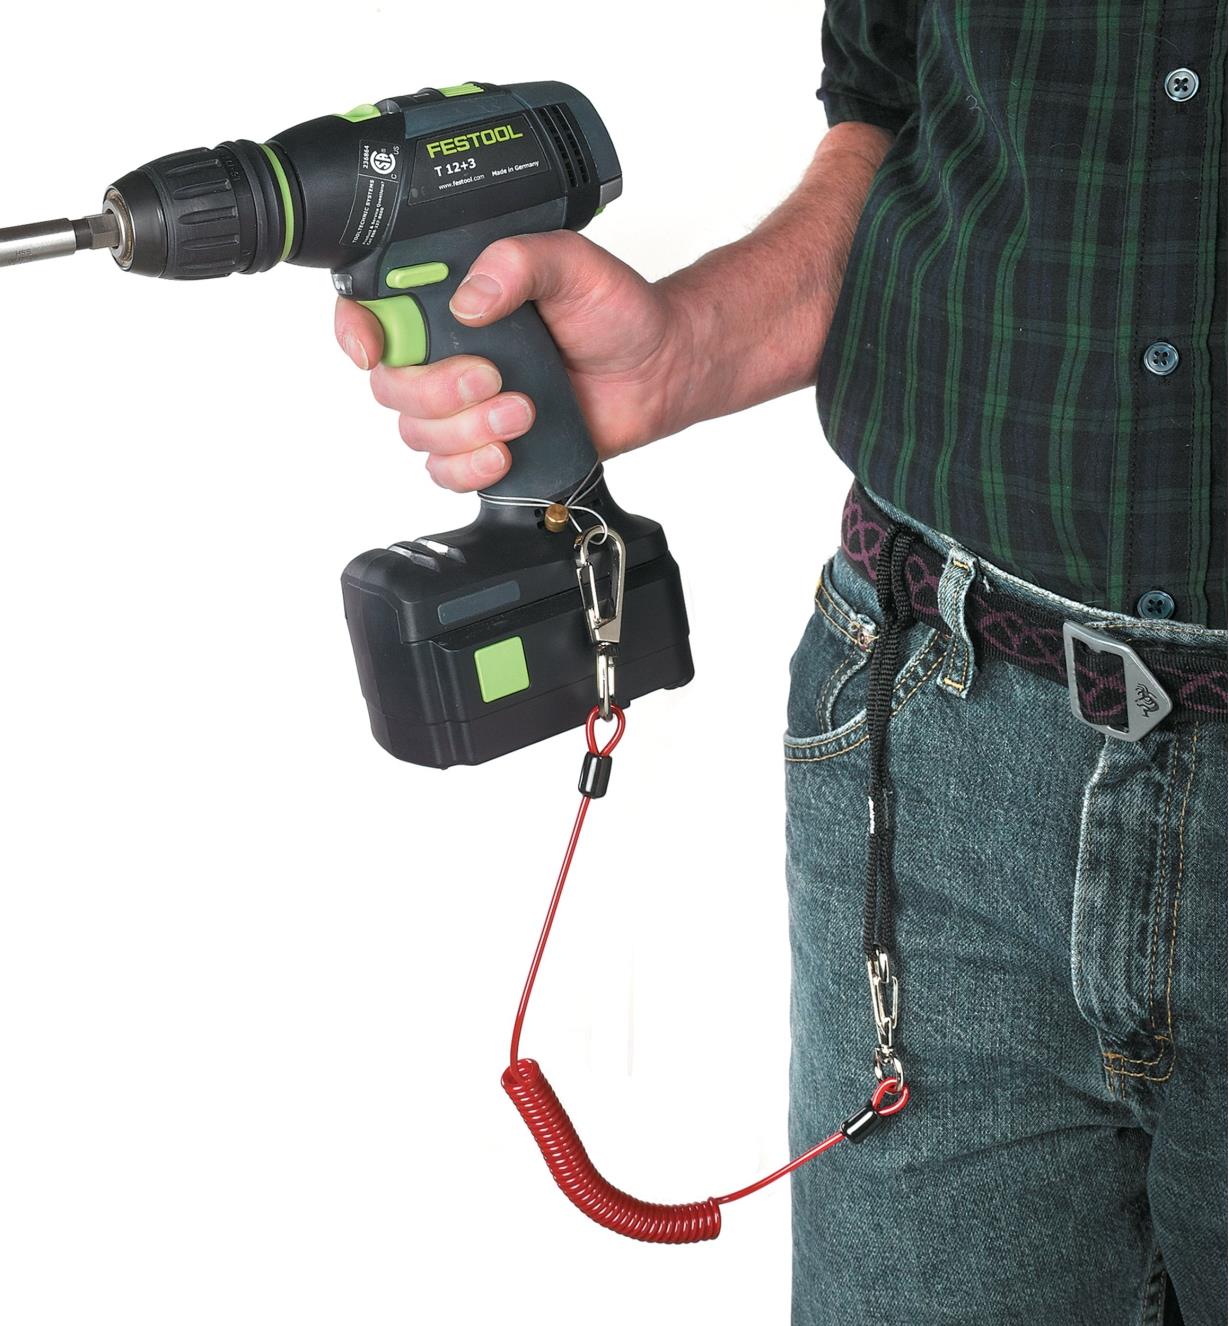 Personne ayant en main une perceuse électrique attachée à la ceinture de son pantalon à l'aide du cordon de retenue pour outils